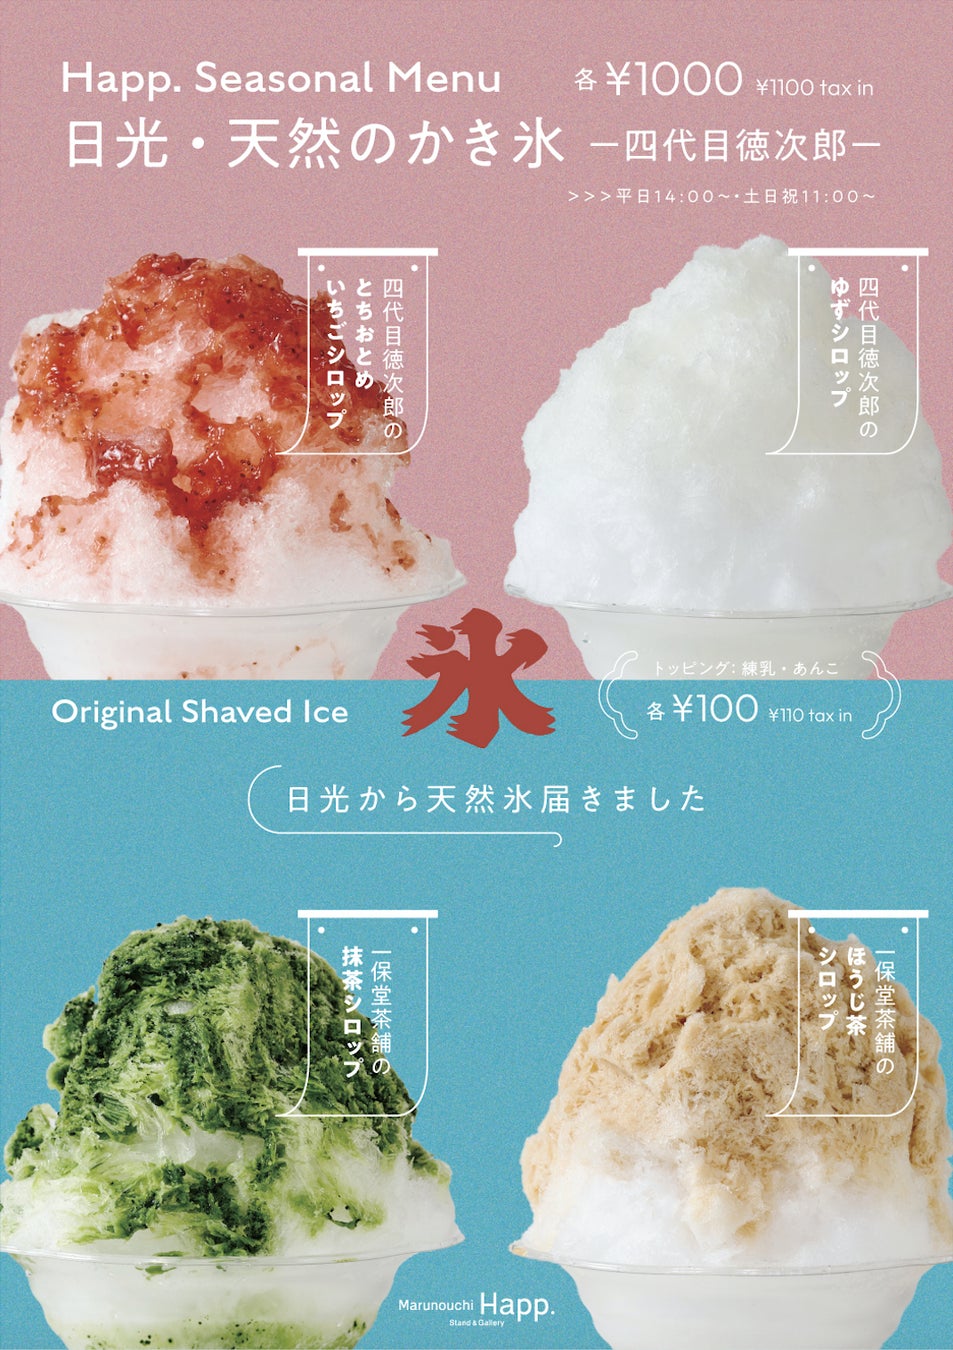 日光「四代目徳次郎」の天然氷のかき氷、東京・丸の内で期間限定で提供します！